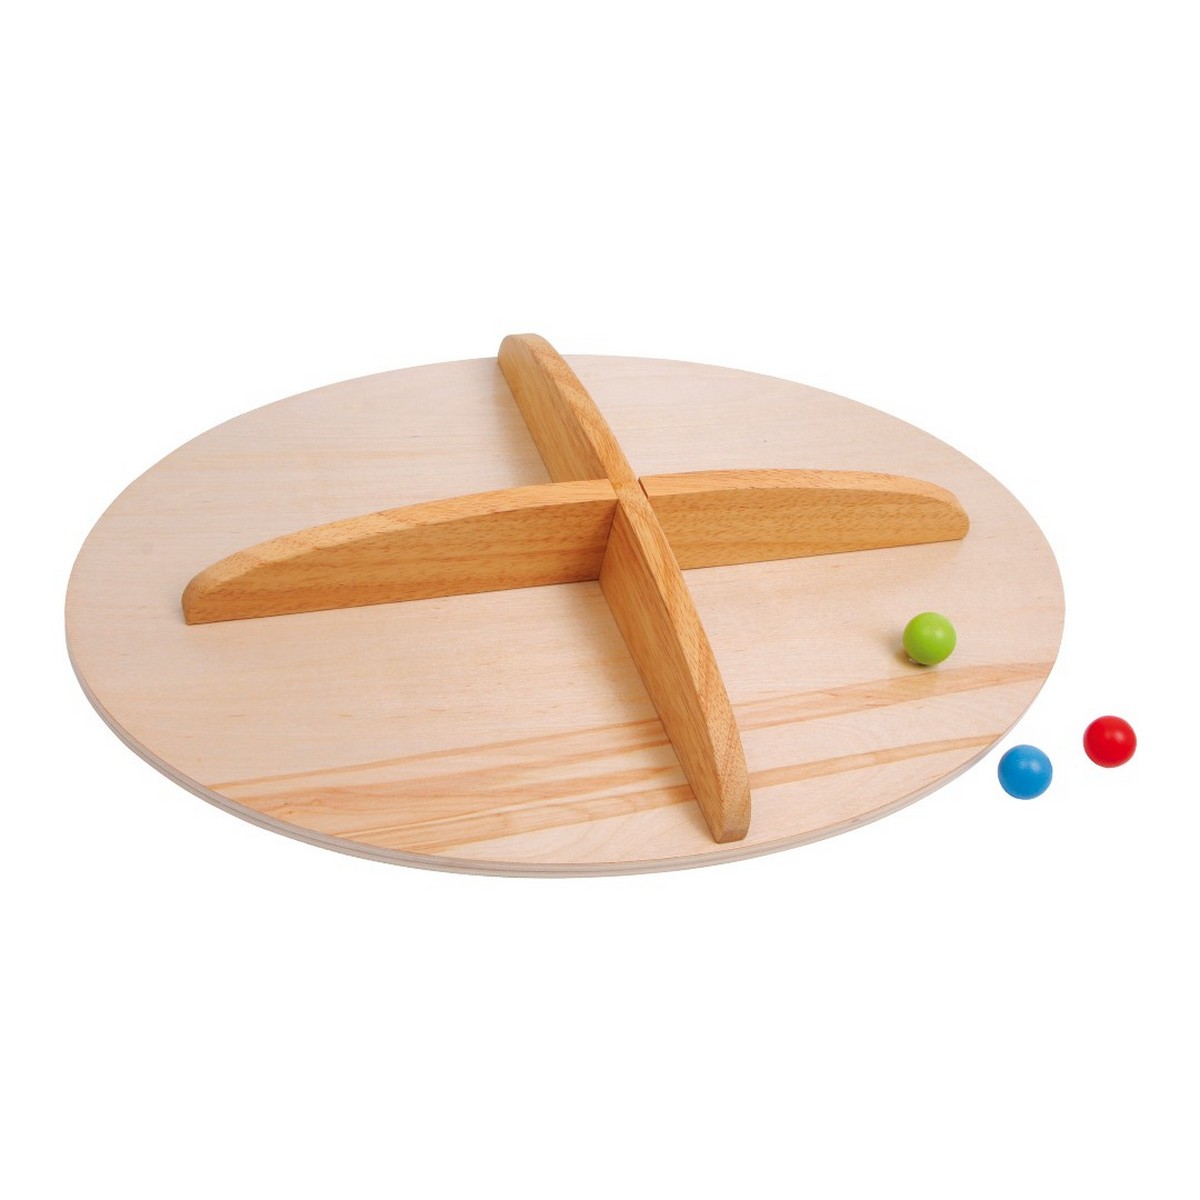 legler small foot un jeu en bois planche equilibre une idee cadeau chez ugo et lea (3)